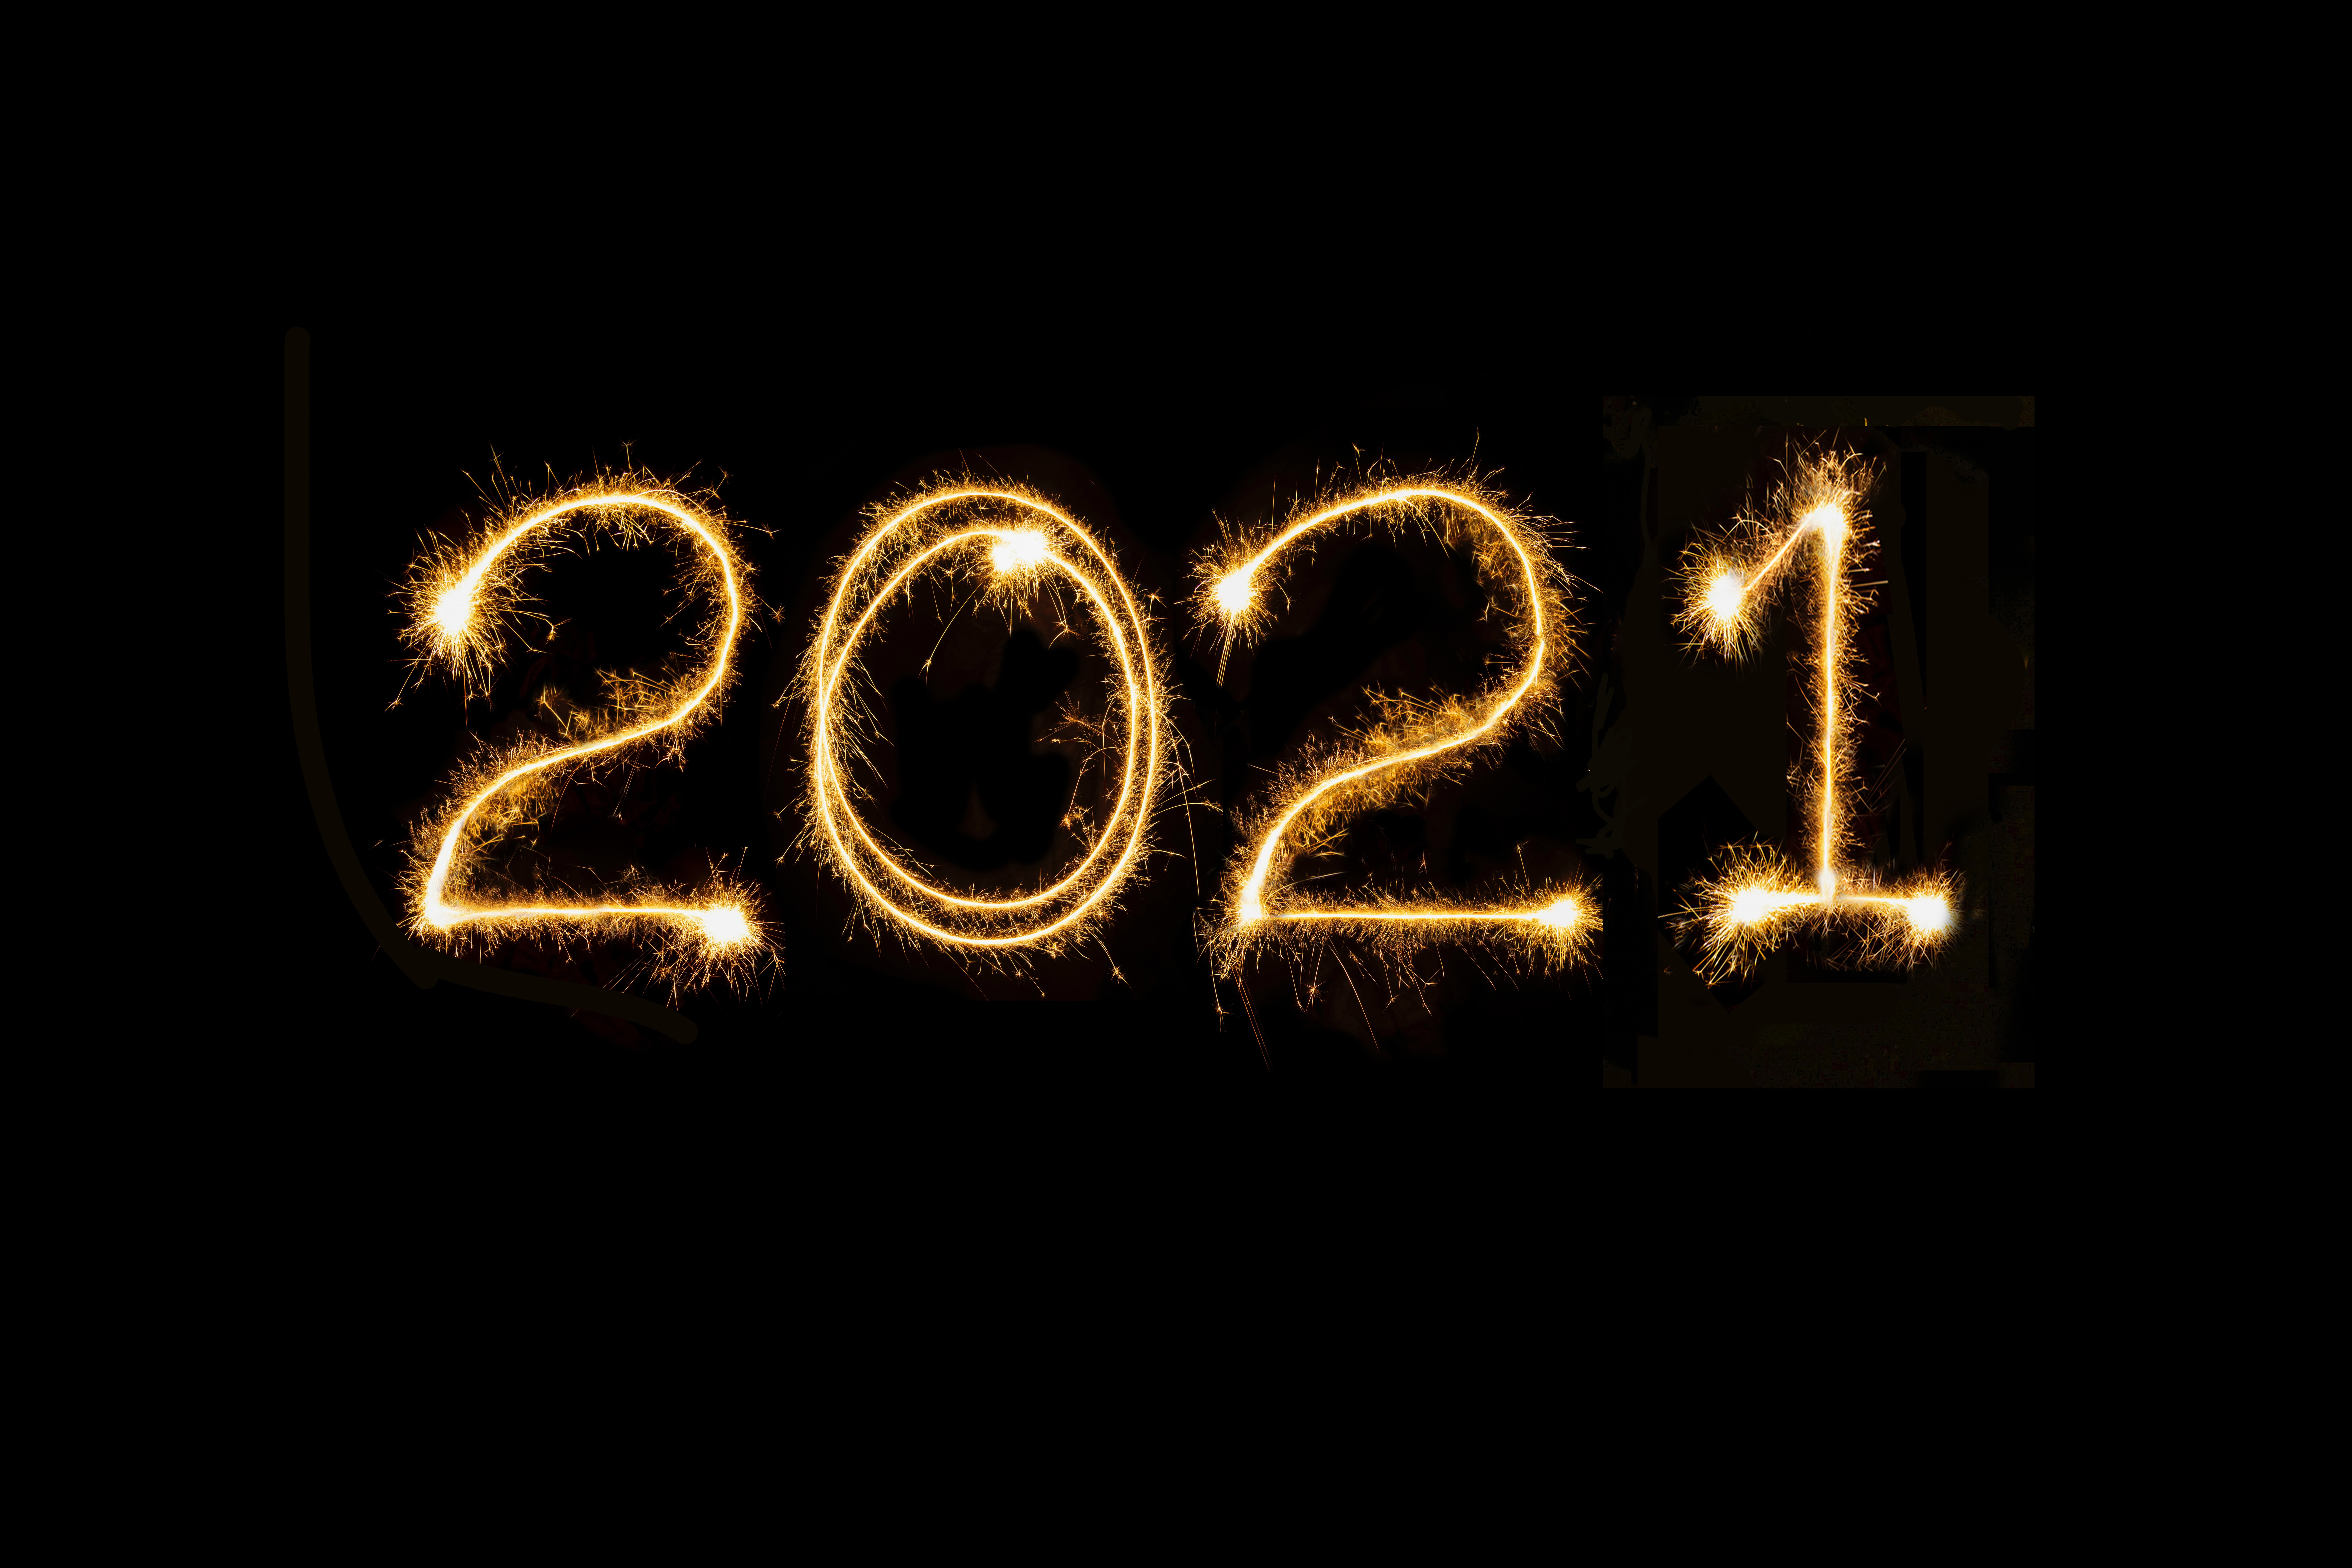 Previsões para 2021: imagem do ano escrito com faíscas sob fundo preto